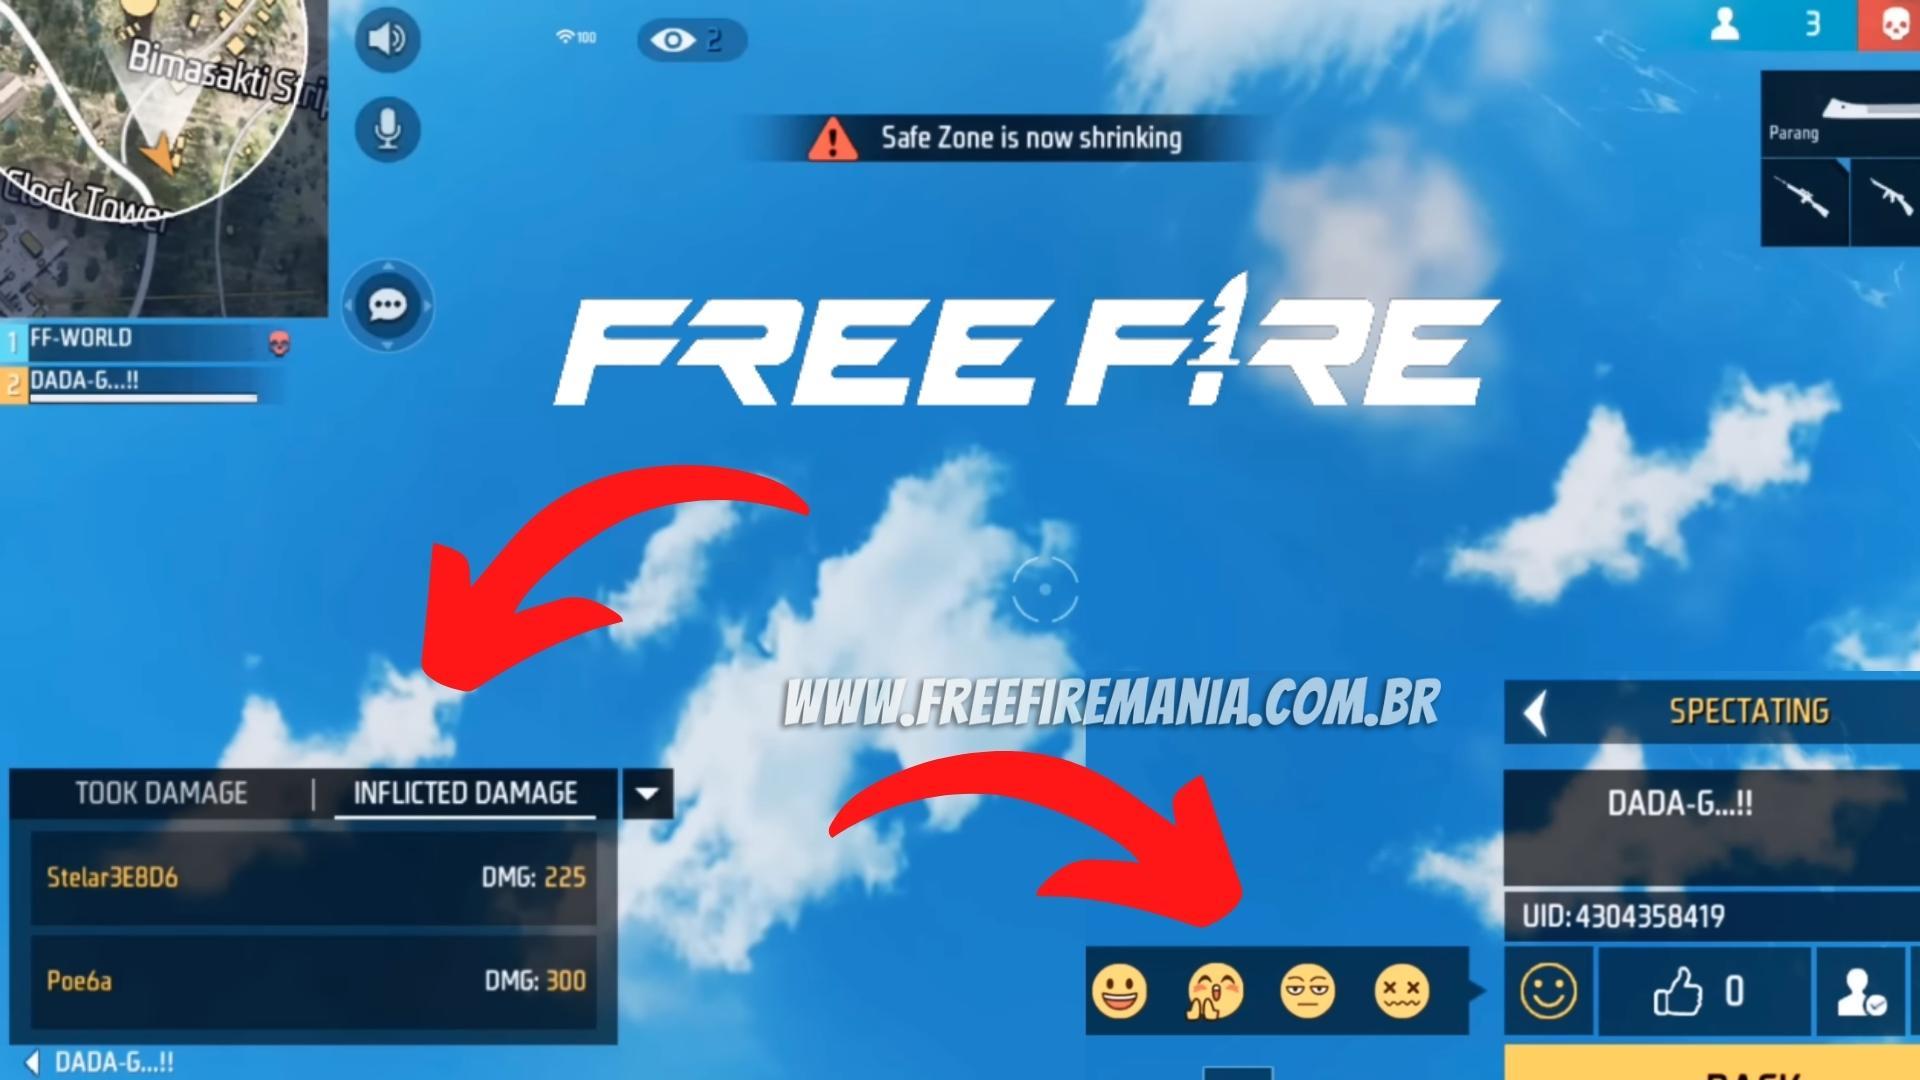 Free Fire: saiba quem está telando, arma que fez a eliminação, envie emojis e veja o dano